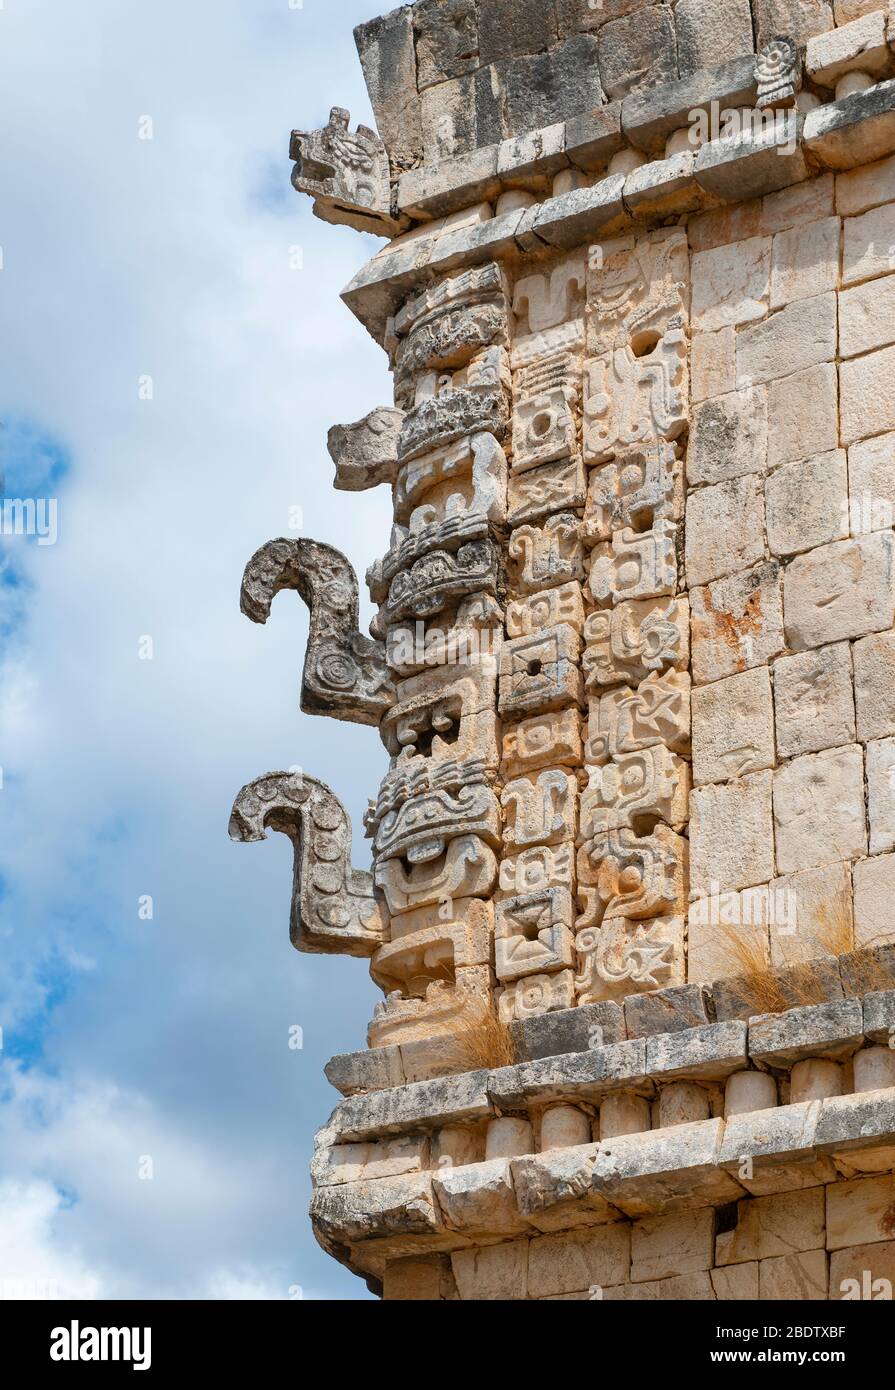 Sculpture de la pluie maya Dieu Chaac dans le site archéologique d'Uxmal près de Merida, péninsule du Yucatan, Mexique. Banque D'Images